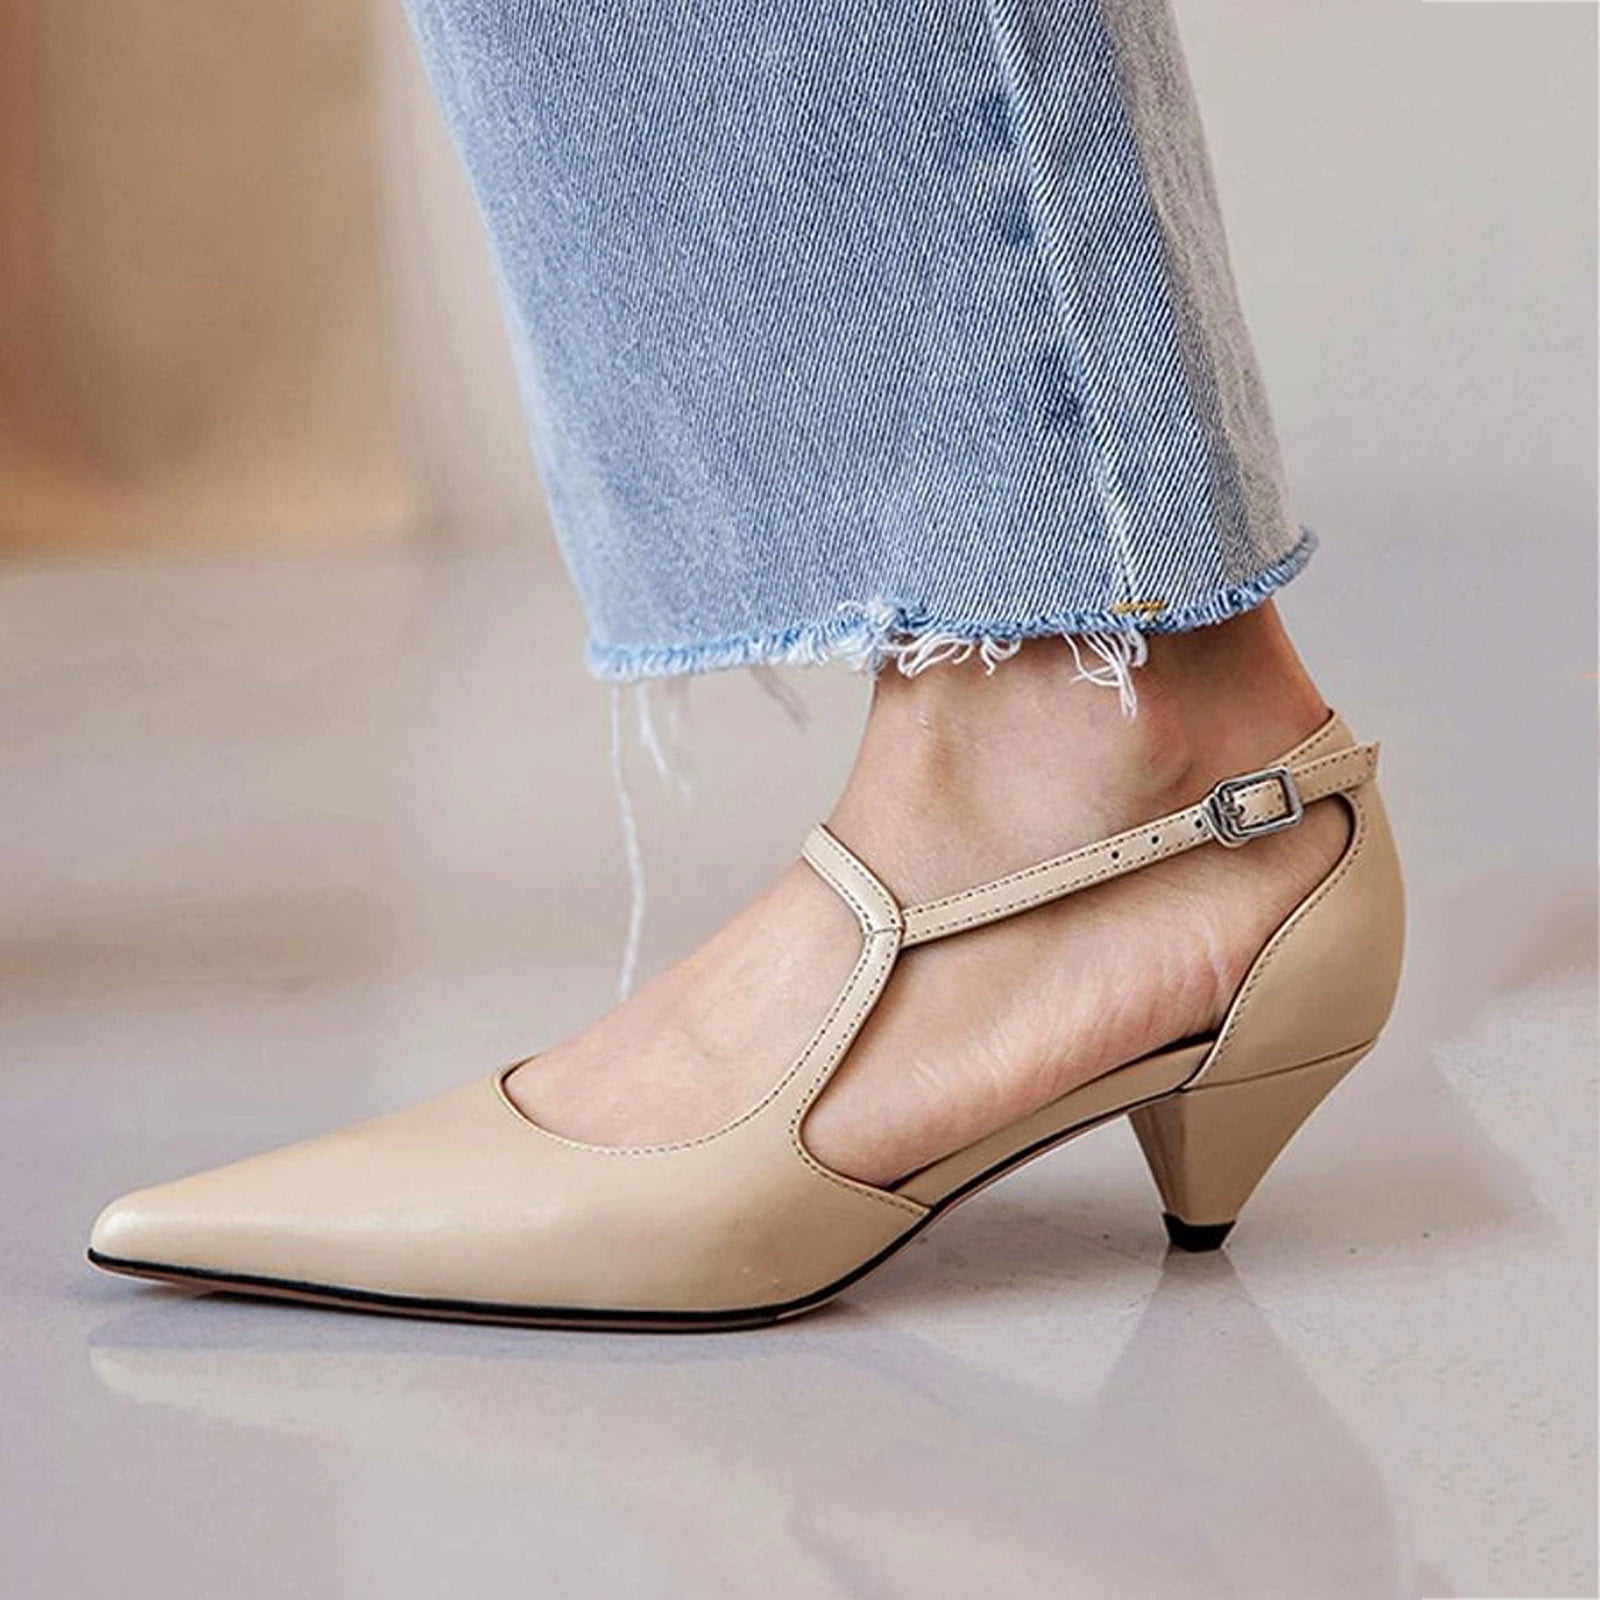 Women's Low-Heel Shoes | M&S